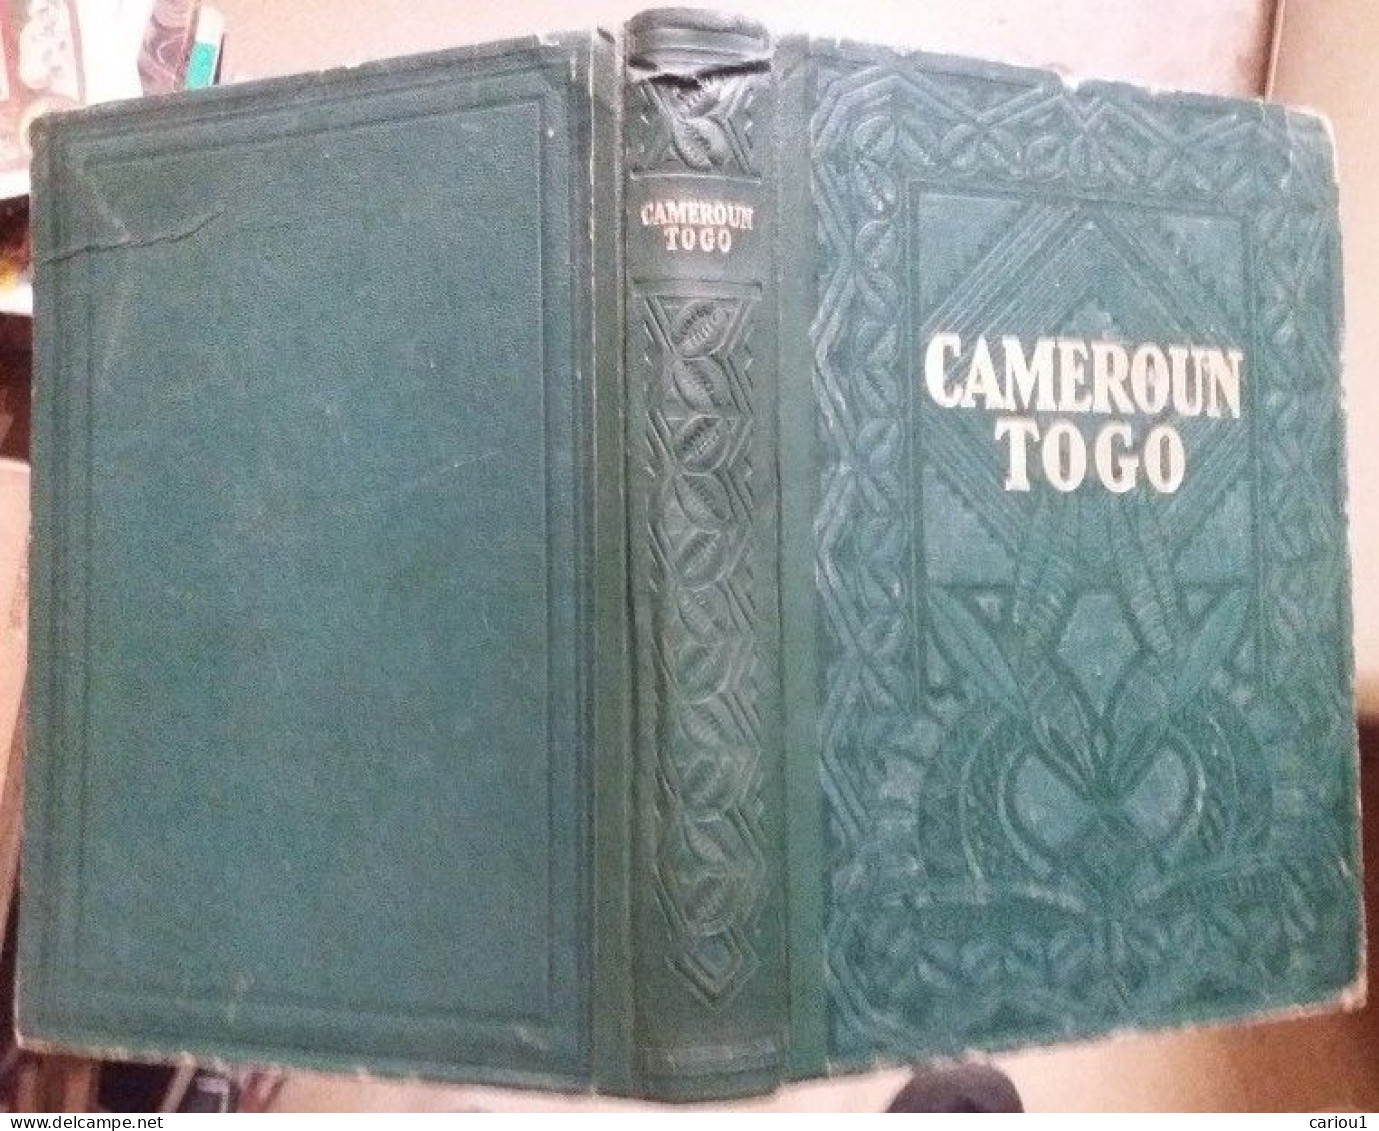 C1 AFRIQUE Guernier CAMEROUN TOGO Encyclopedie Coloniale 1951 RELIE Illustre Port Inclus France - Geographie